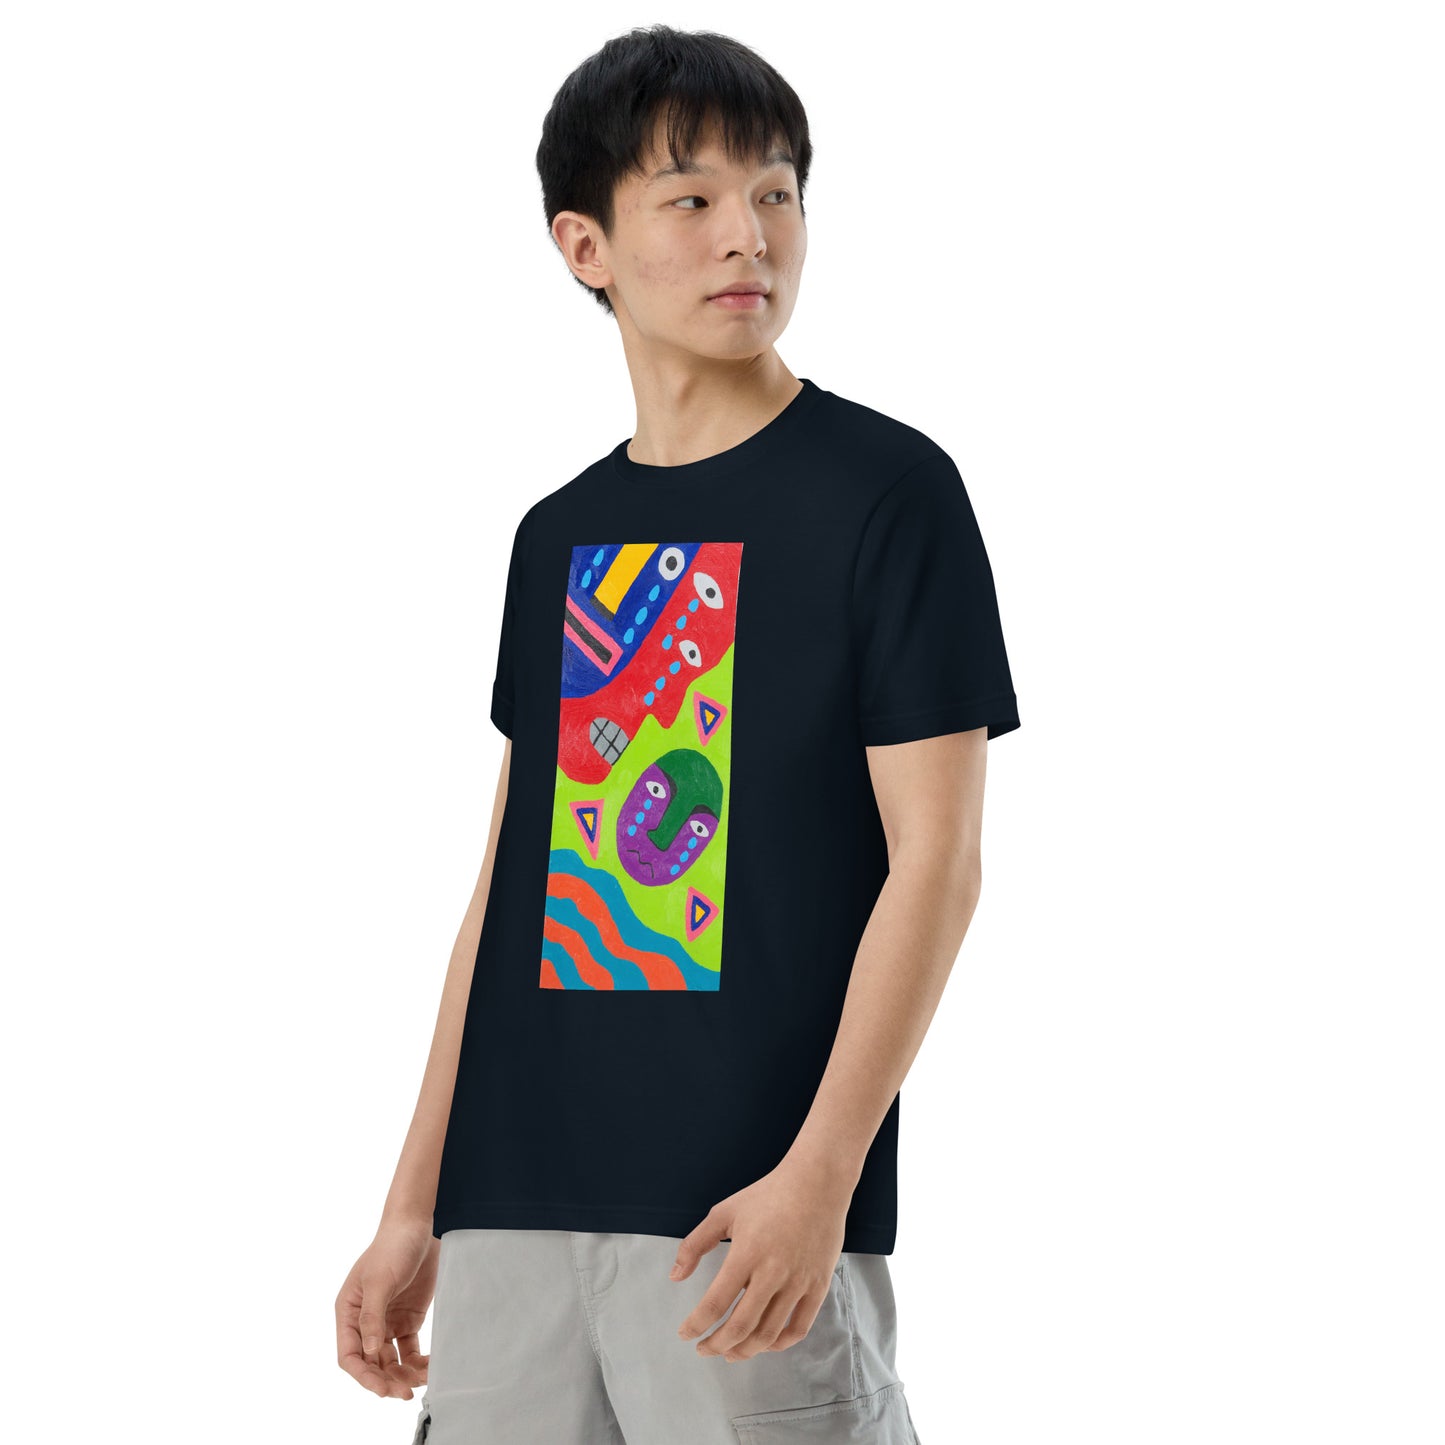 045-清水誠治-5-前面プリントTシャツ-アートをデザイン